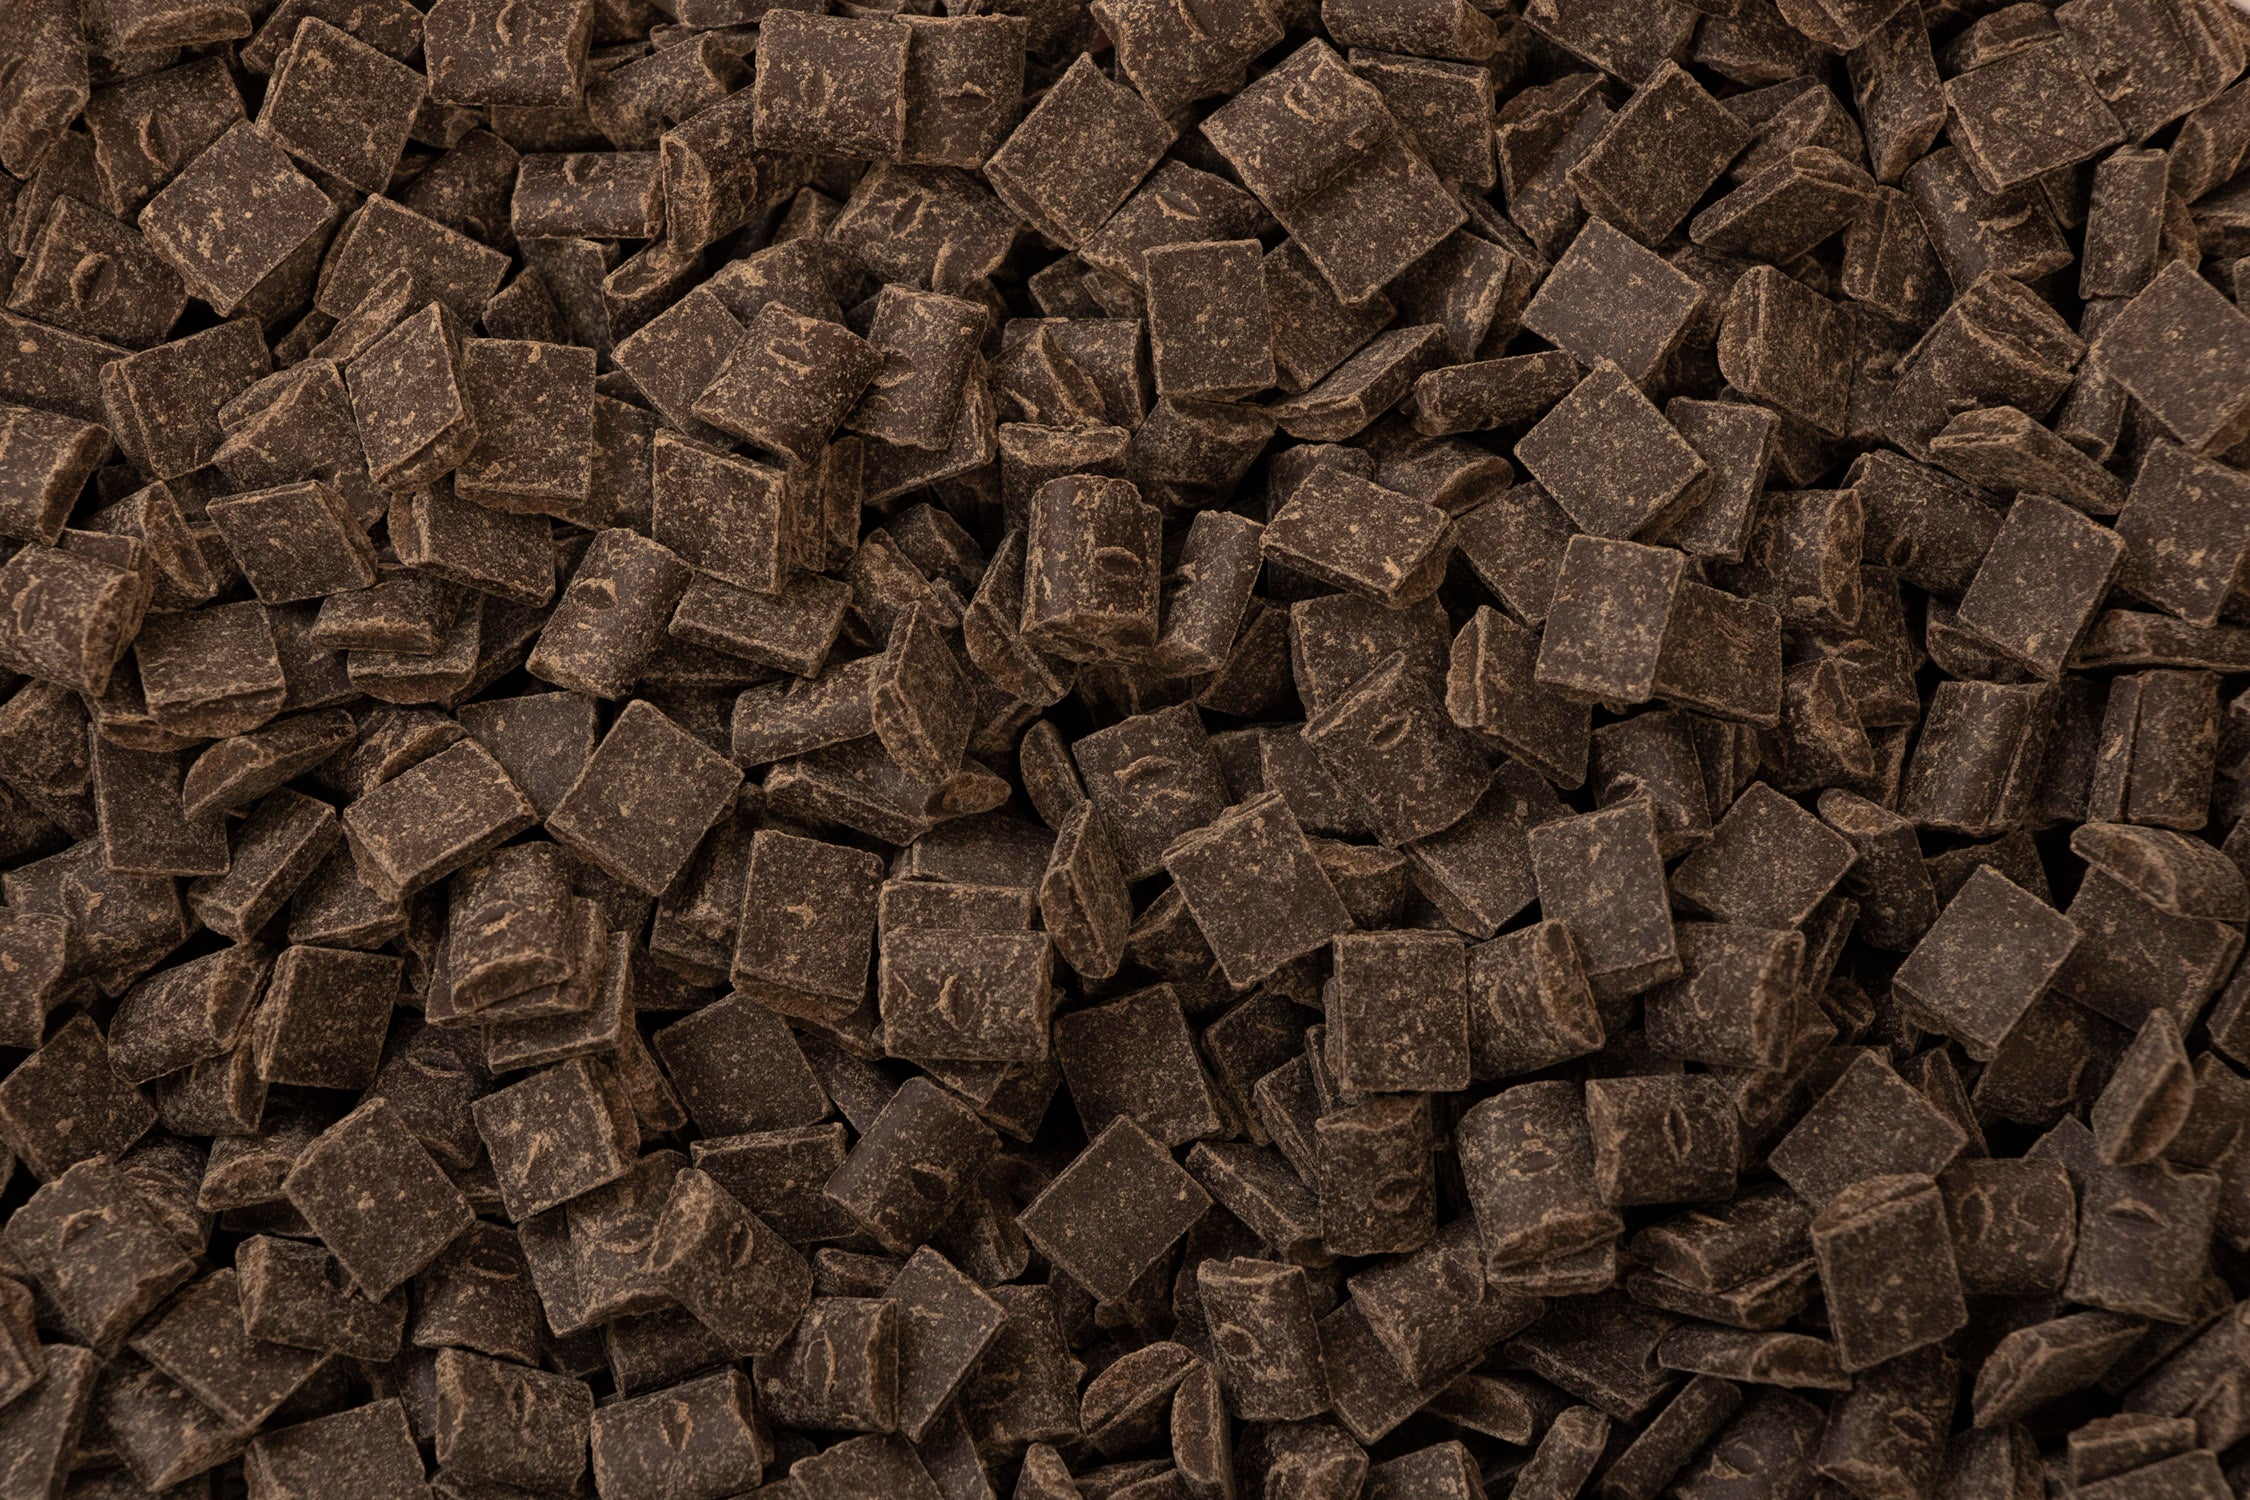 Organic 70% Dark Chocolate Chunks